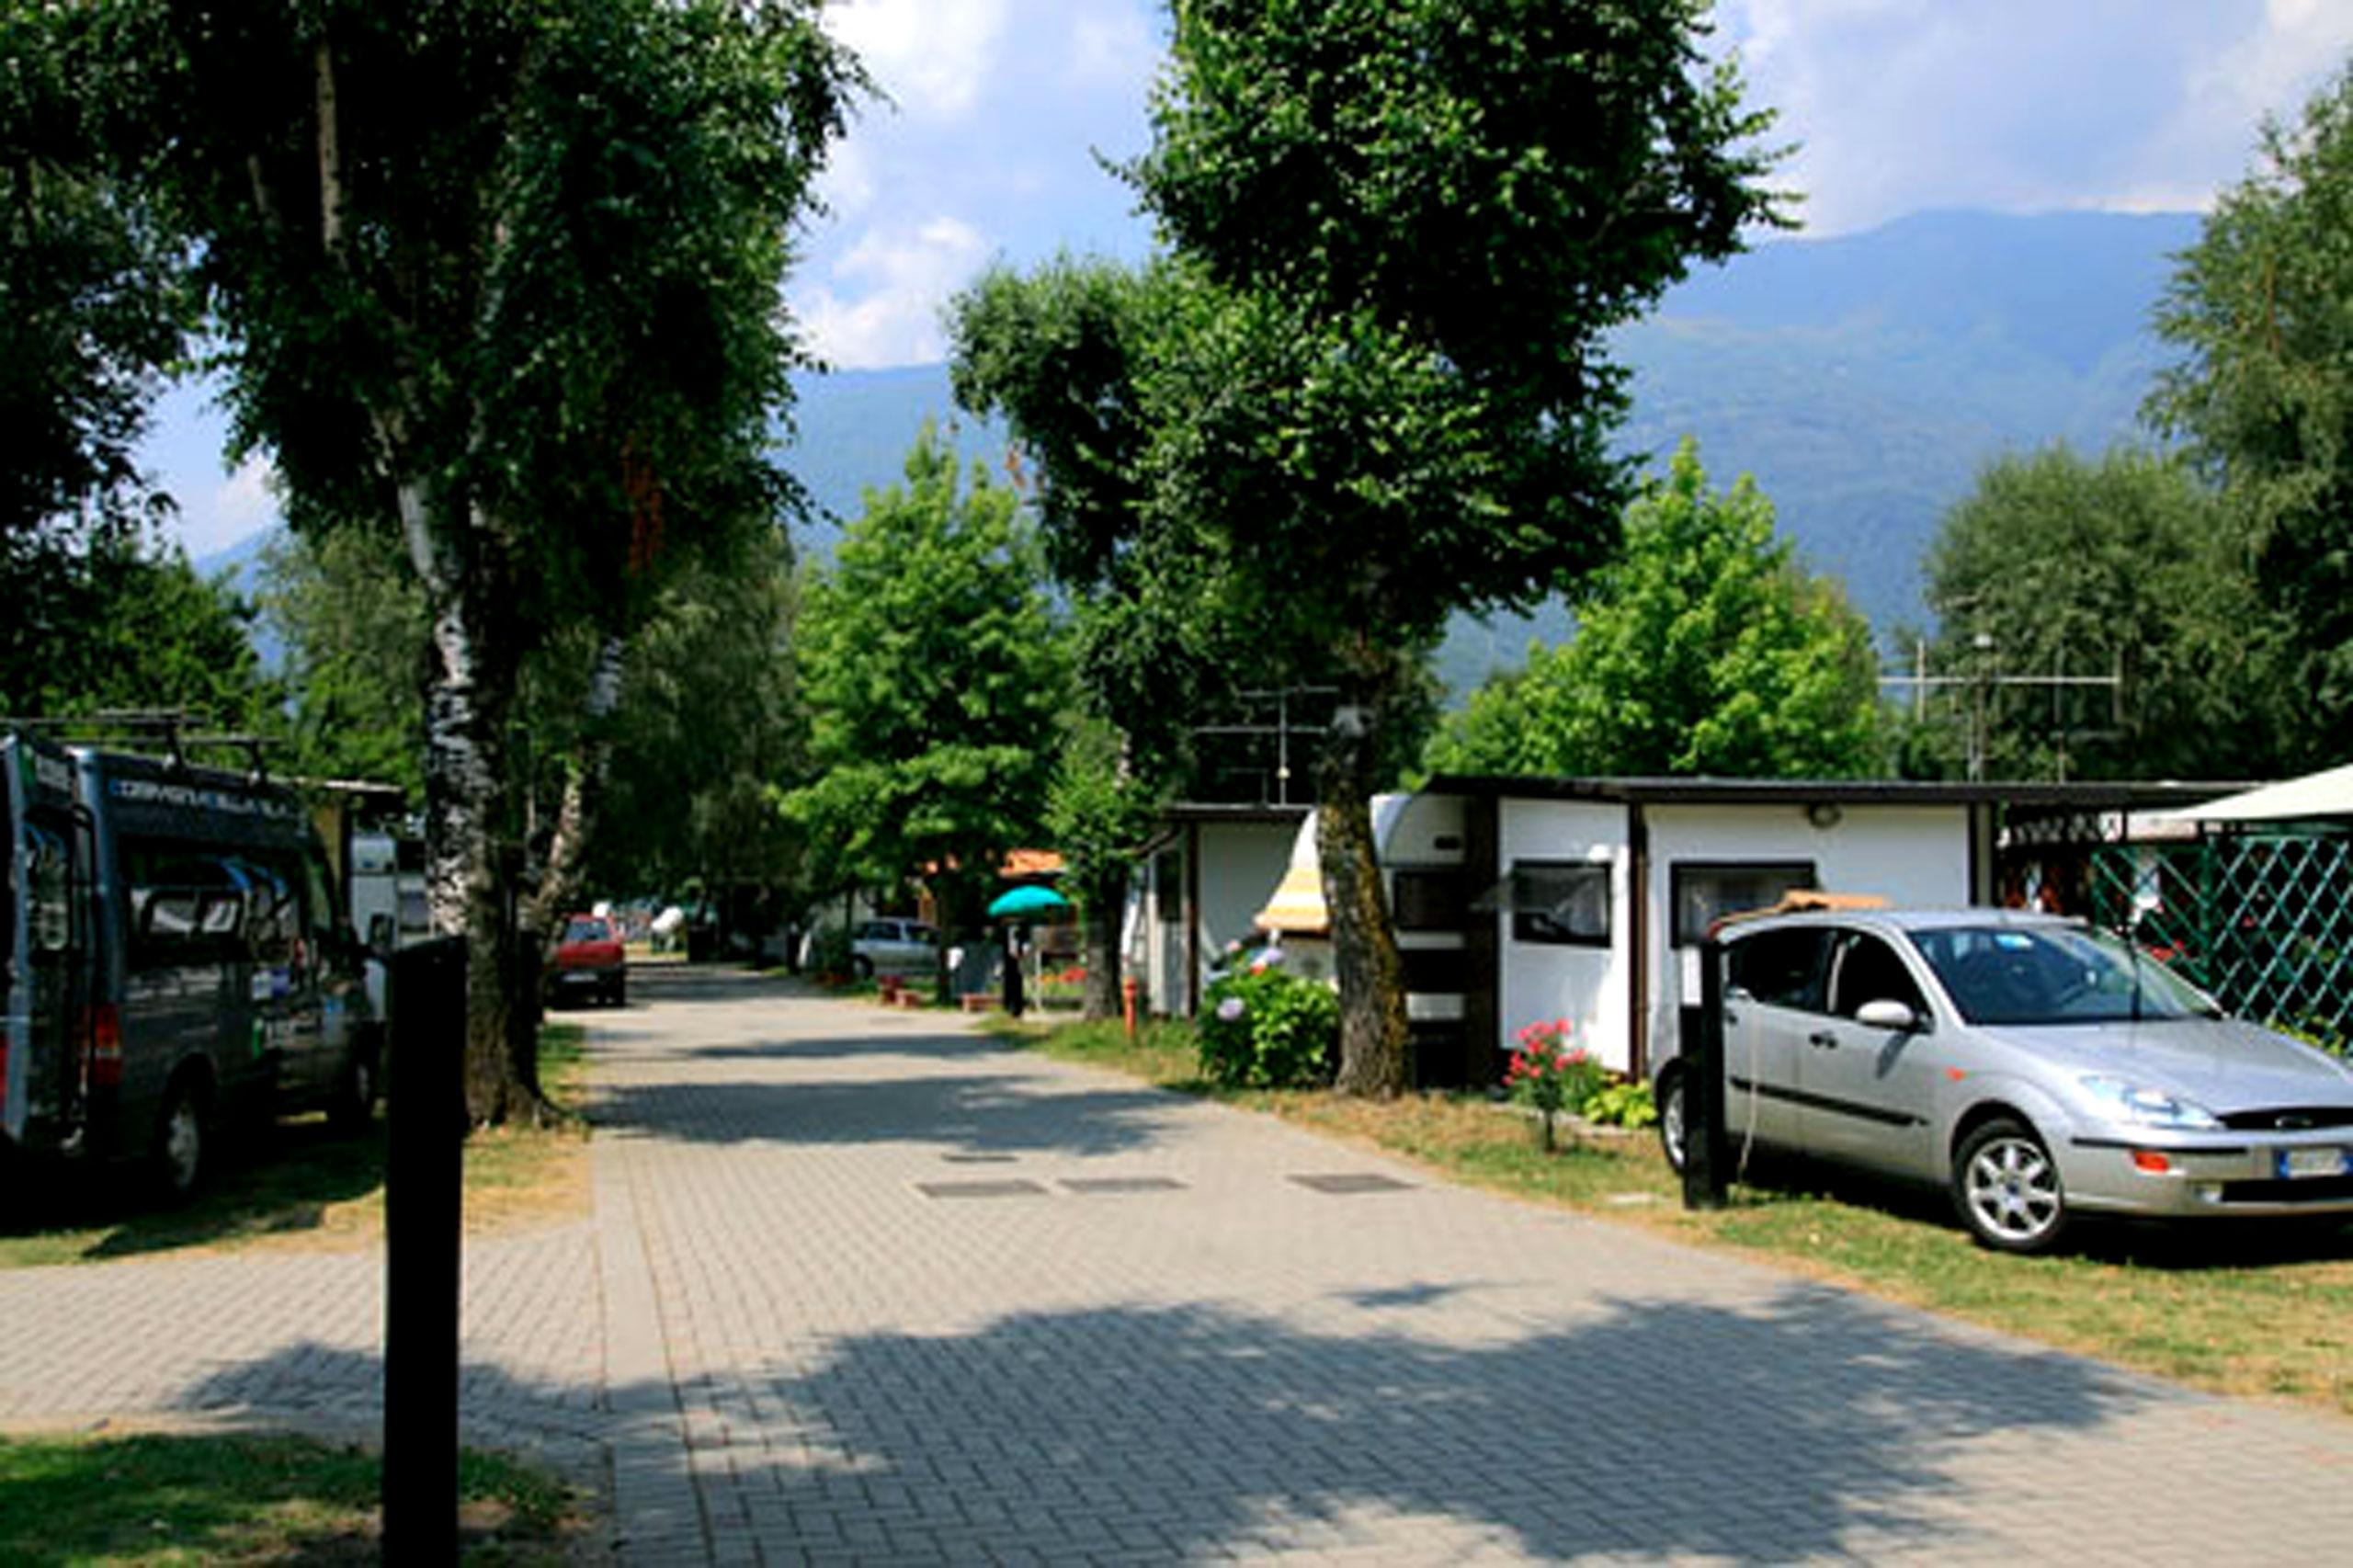 Der Camping TuriSport bietet neben zahlreichen Stellplätzen einen grossen Komfort für alle Besucher:innen. Copyright: Camping TuriSport